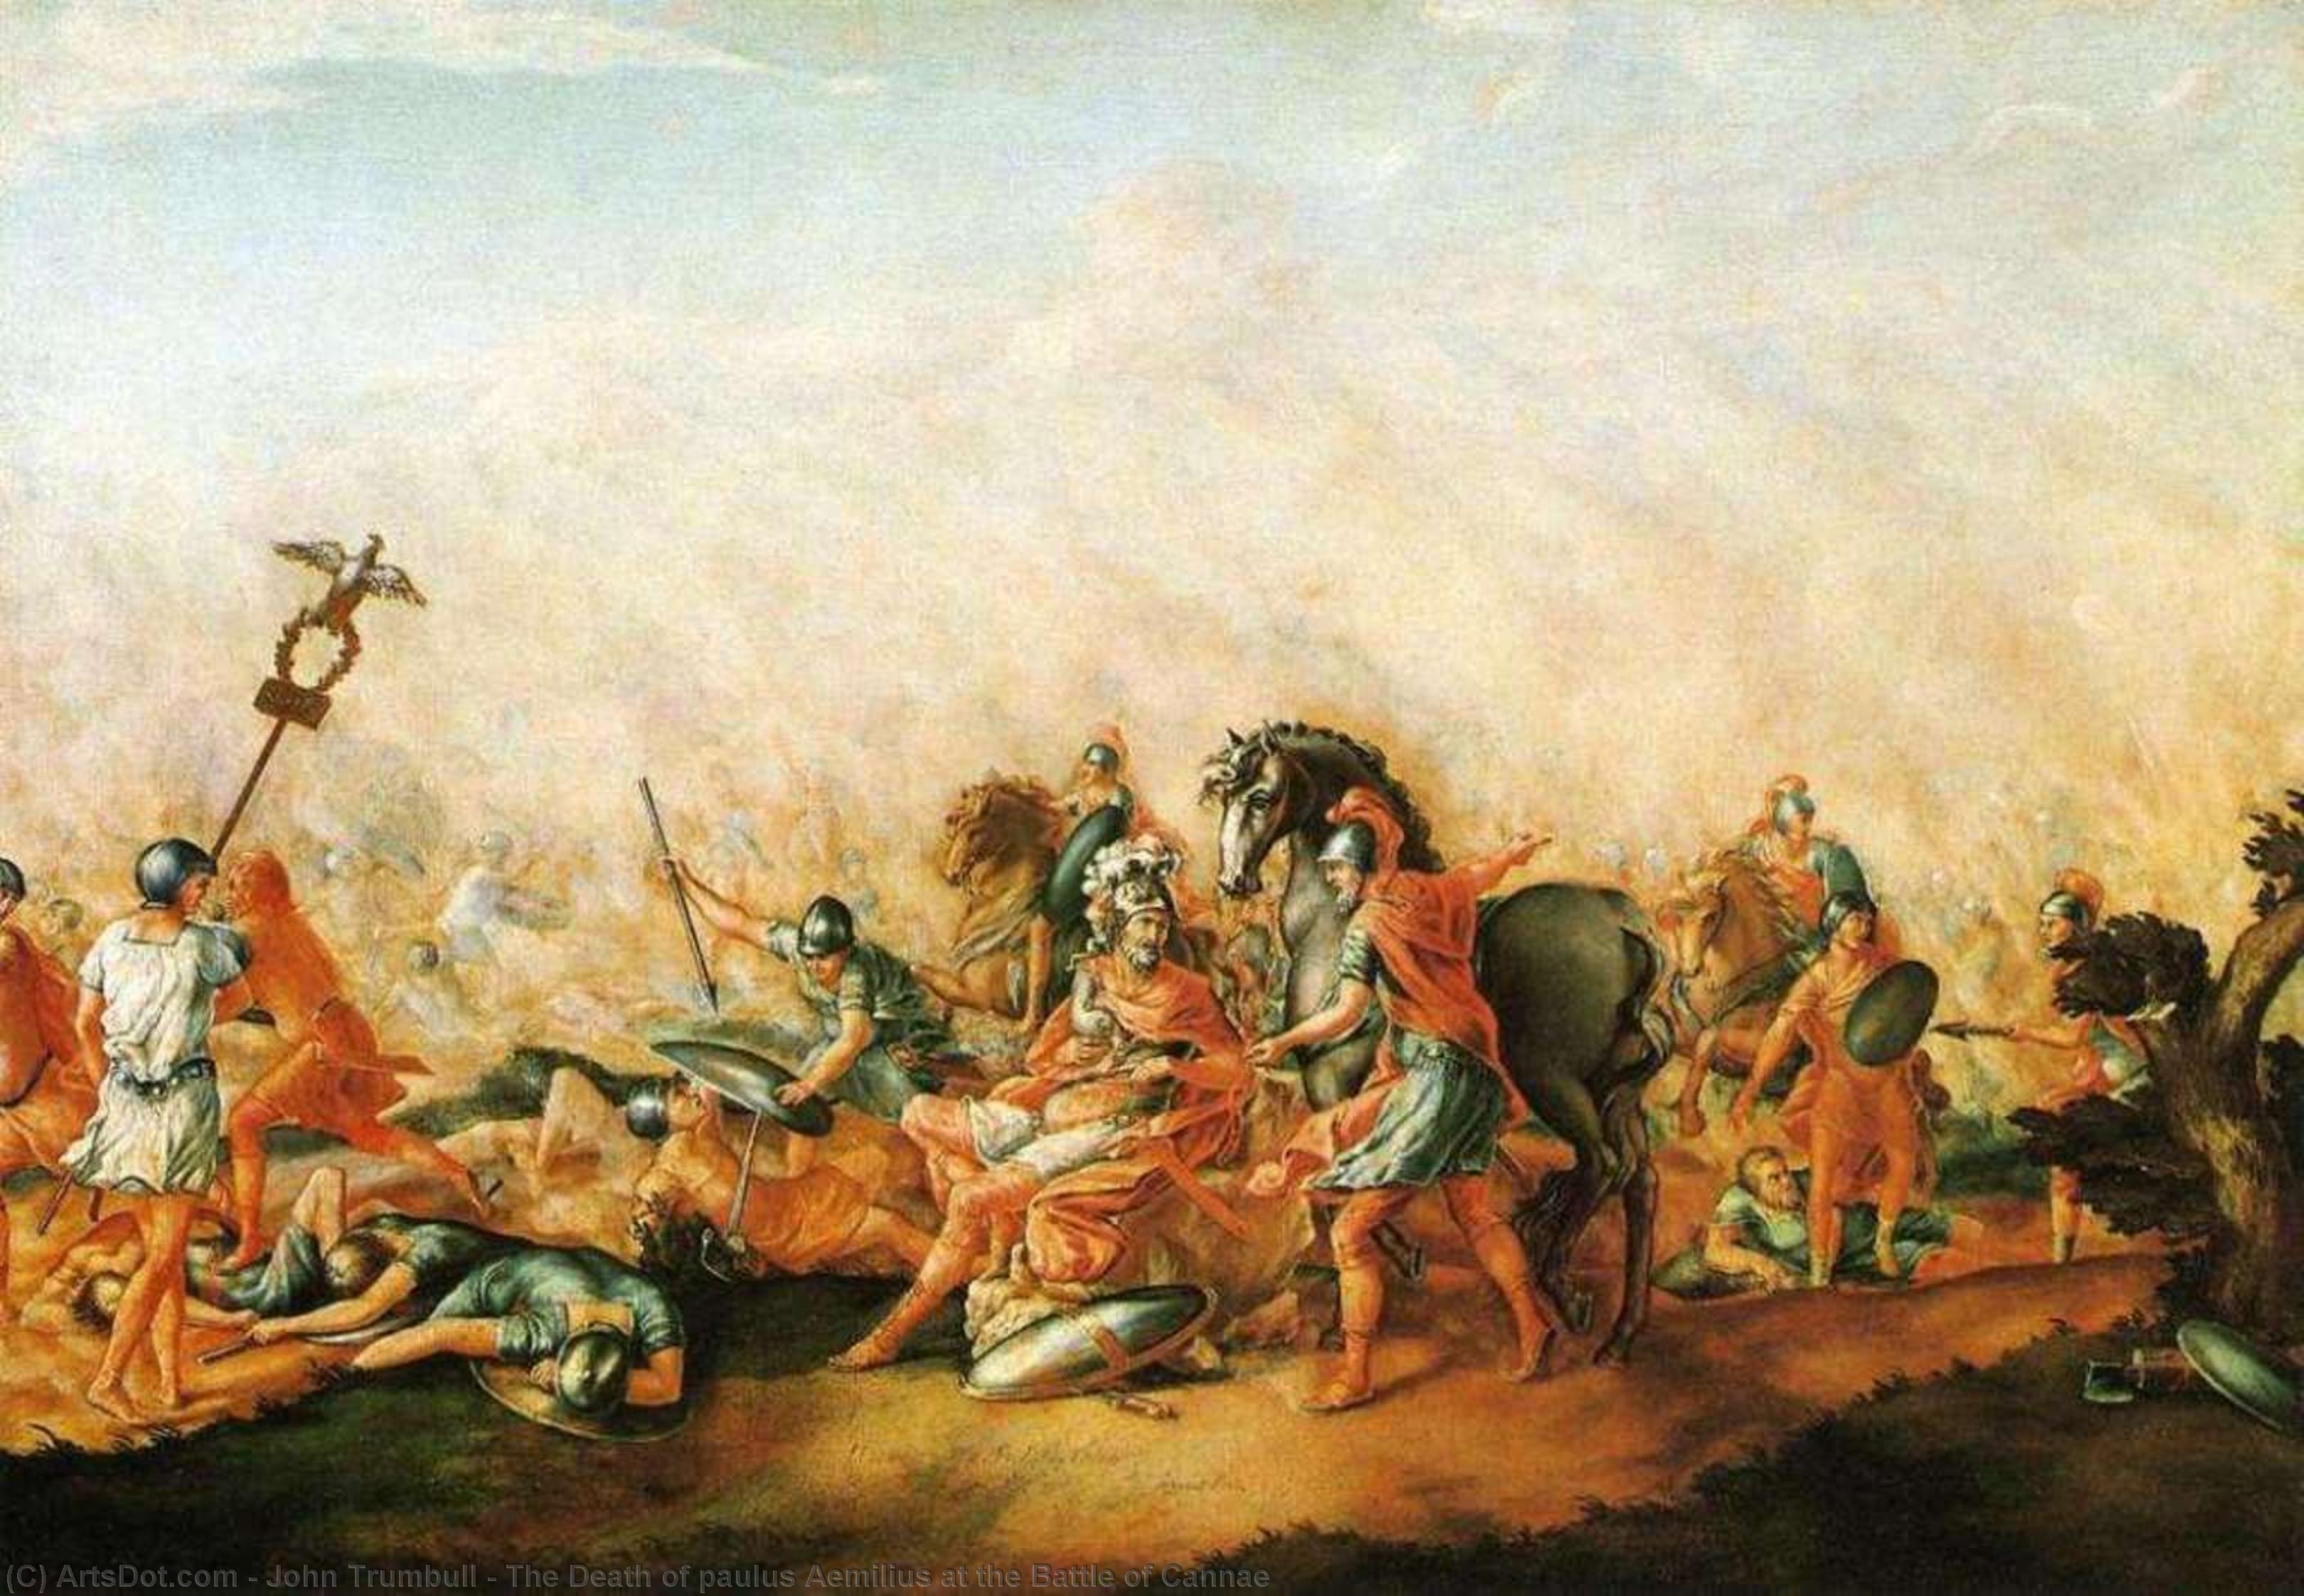 WikiOO.org - Енциклопедия за изящни изкуства - Живопис, Произведения на изкуството John Trumbull - The Death of paulus Aemilius at the Battle of Cannae